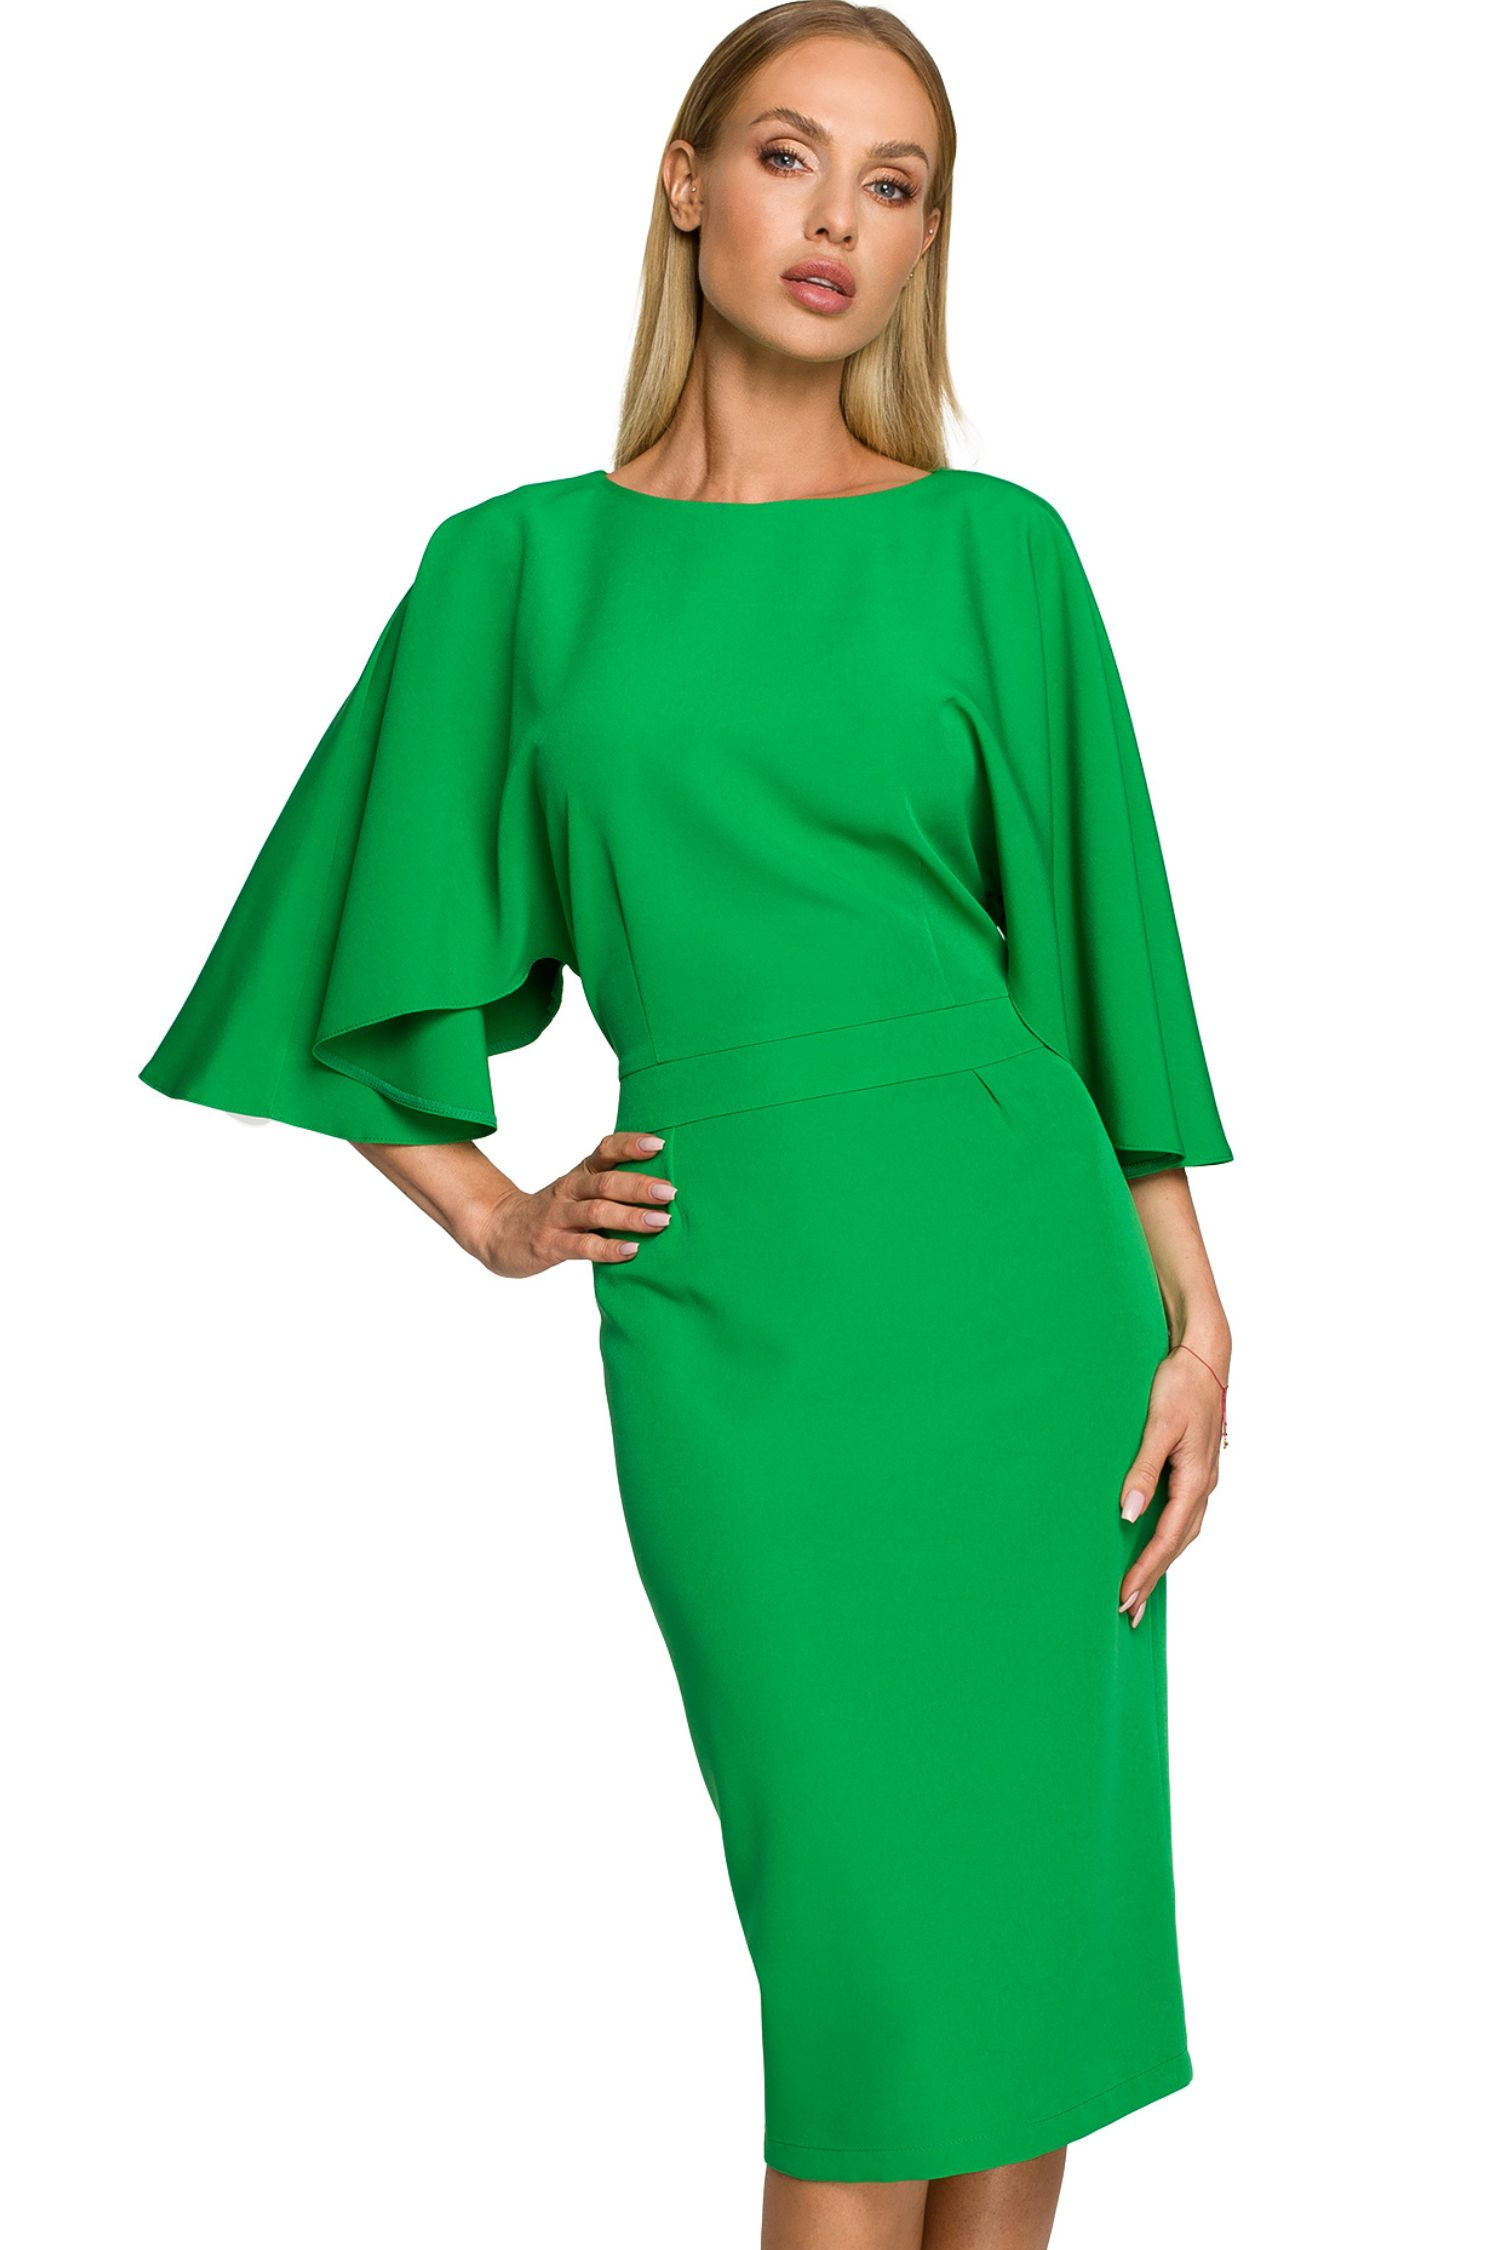 Sukienka Sukienka elegancka ołówkowa z szerokimi rękawami zielona z pelerynką